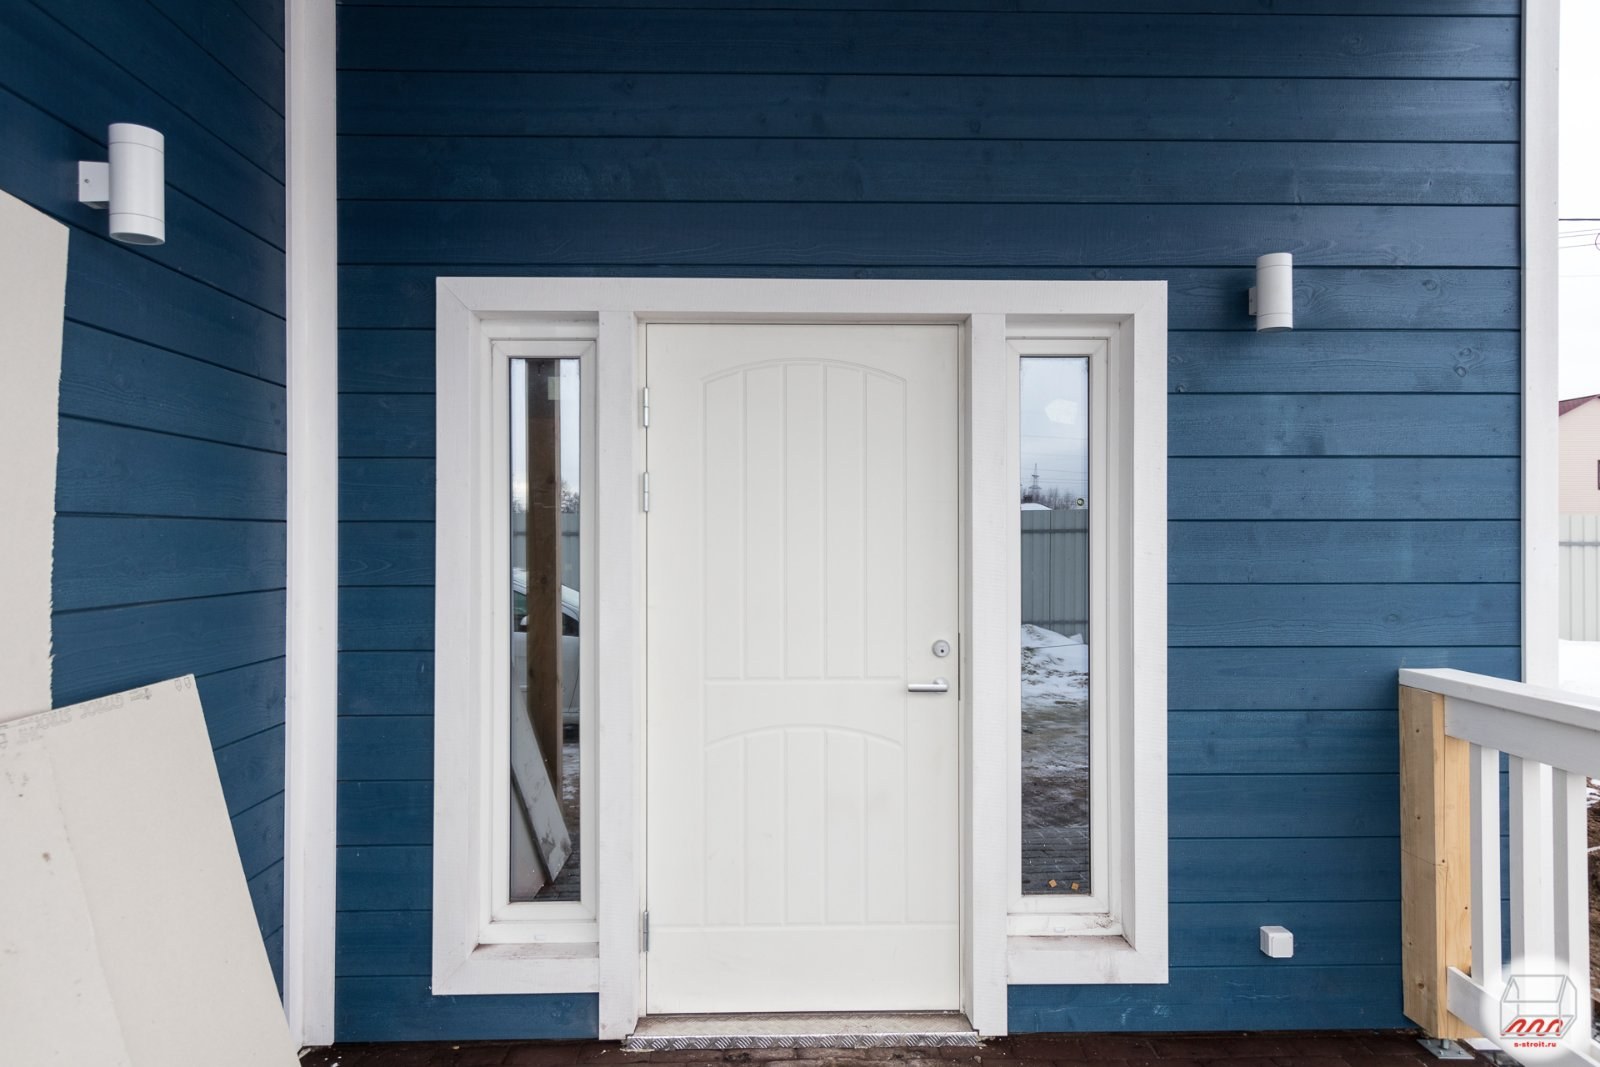 Финская дверь для дома